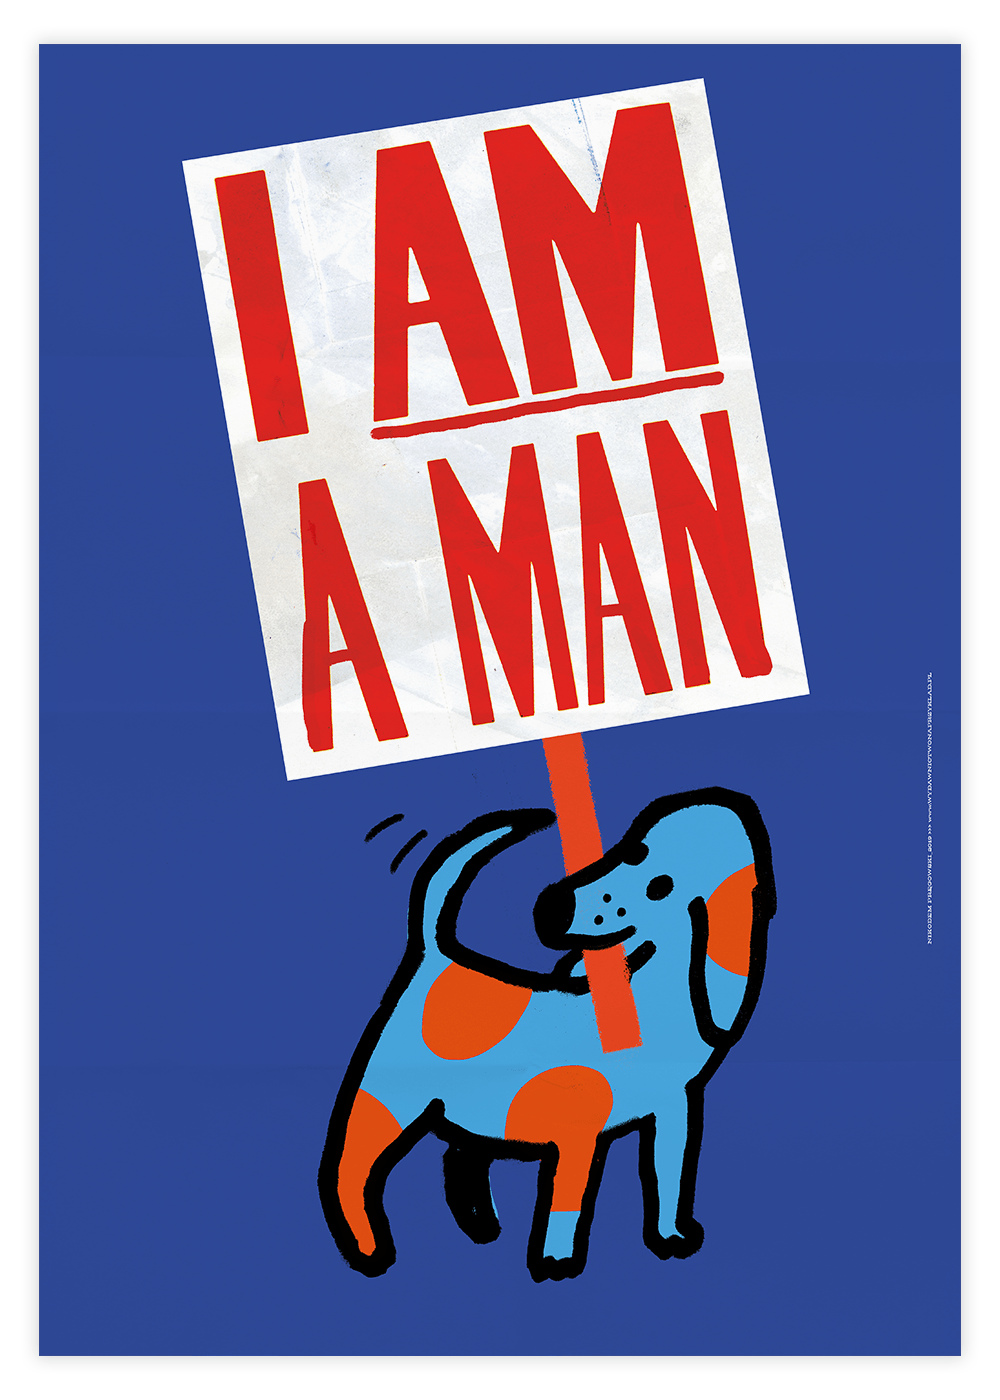 Plakat: "I am a man"